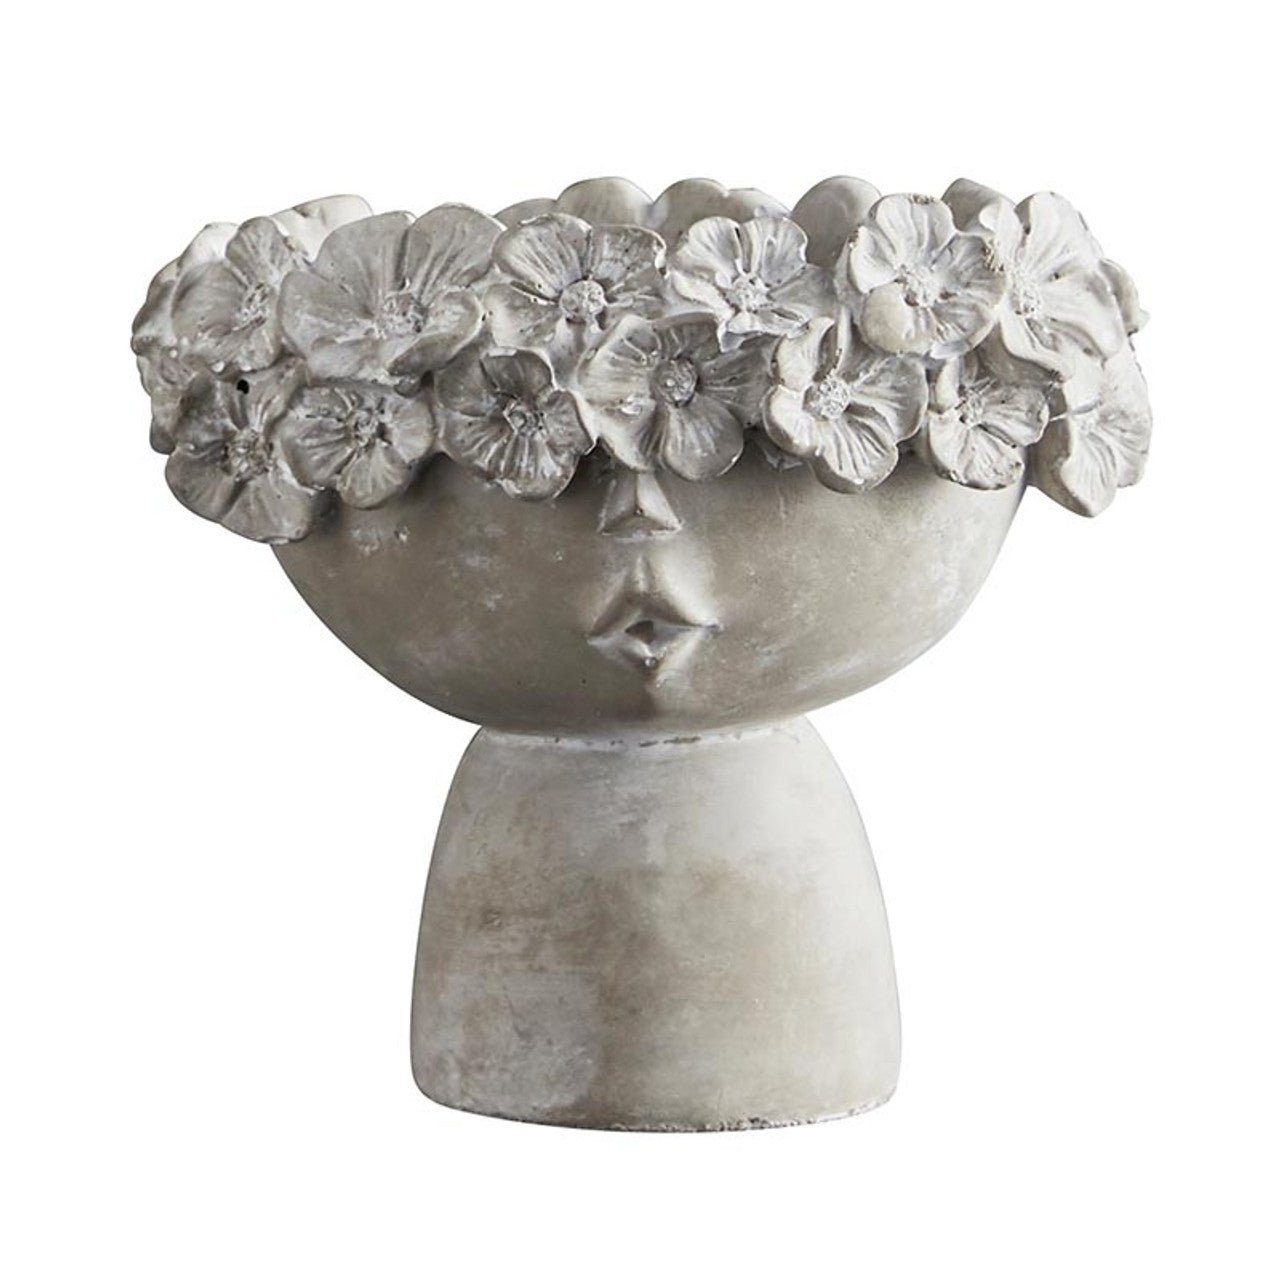 Head Pot Cement Garden Planter | Cherub Pedestal for Flowers, Succulents | 5.5" Tall